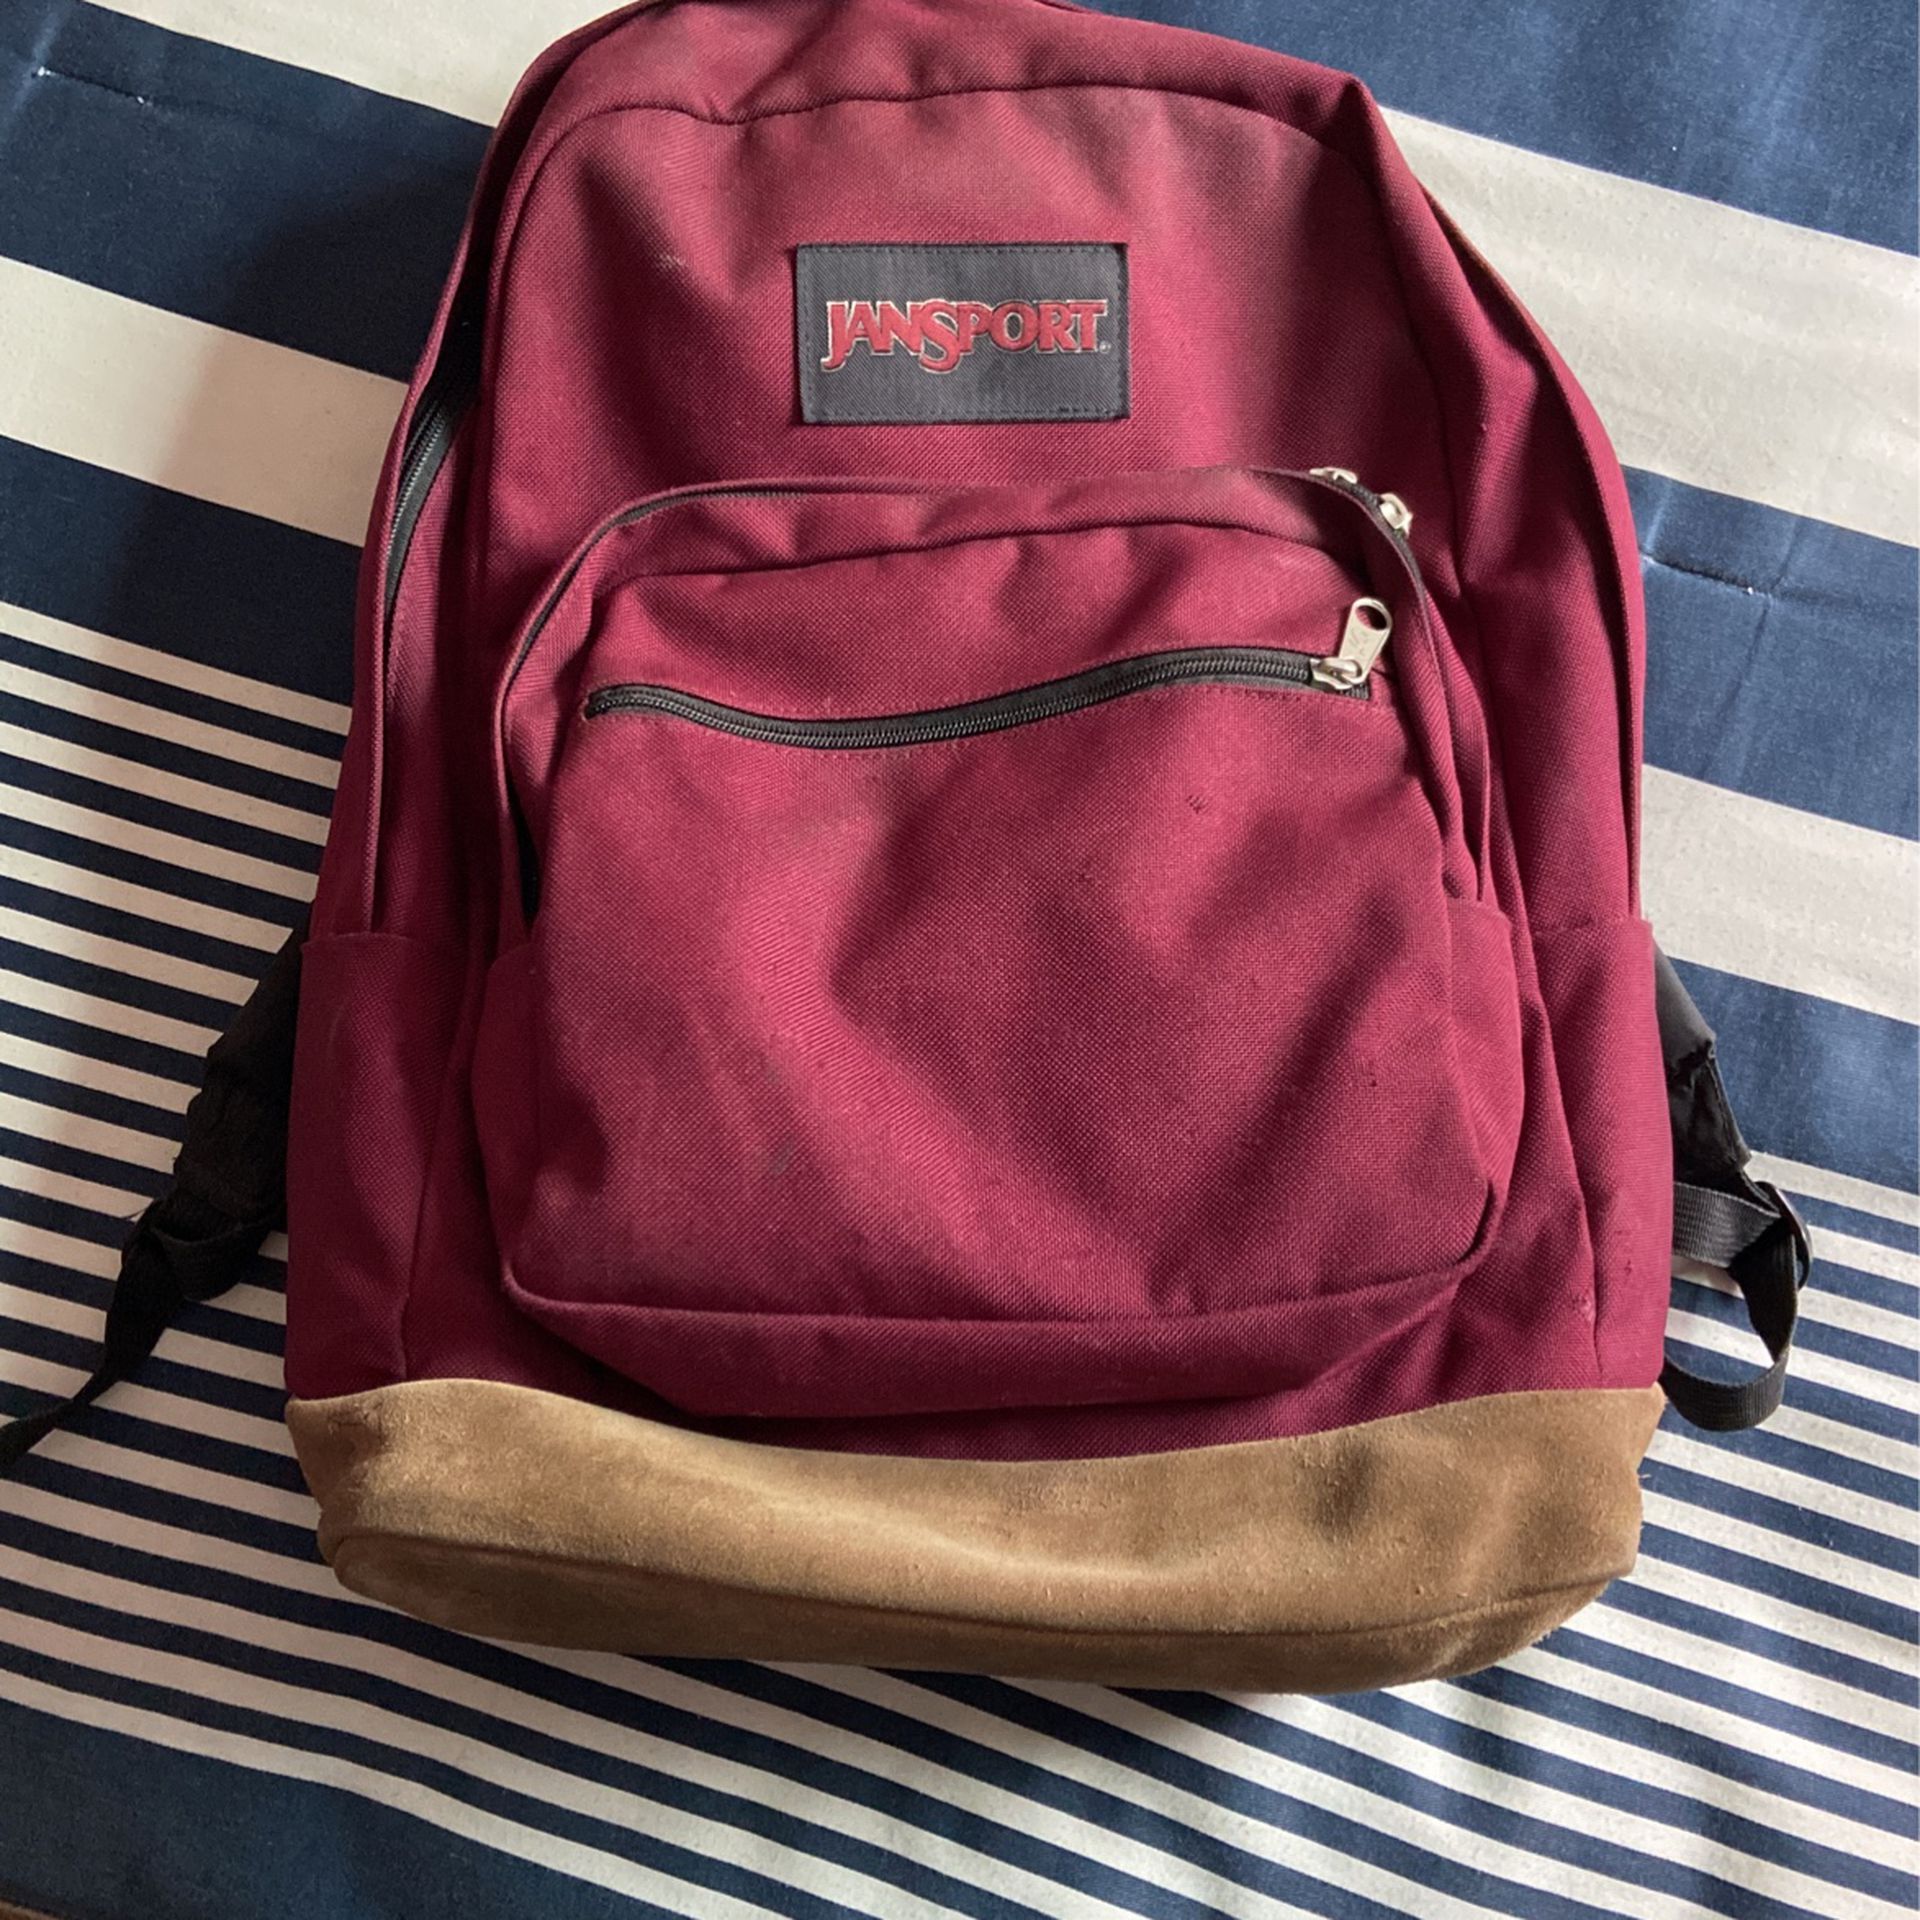 Jansport Backpack For School